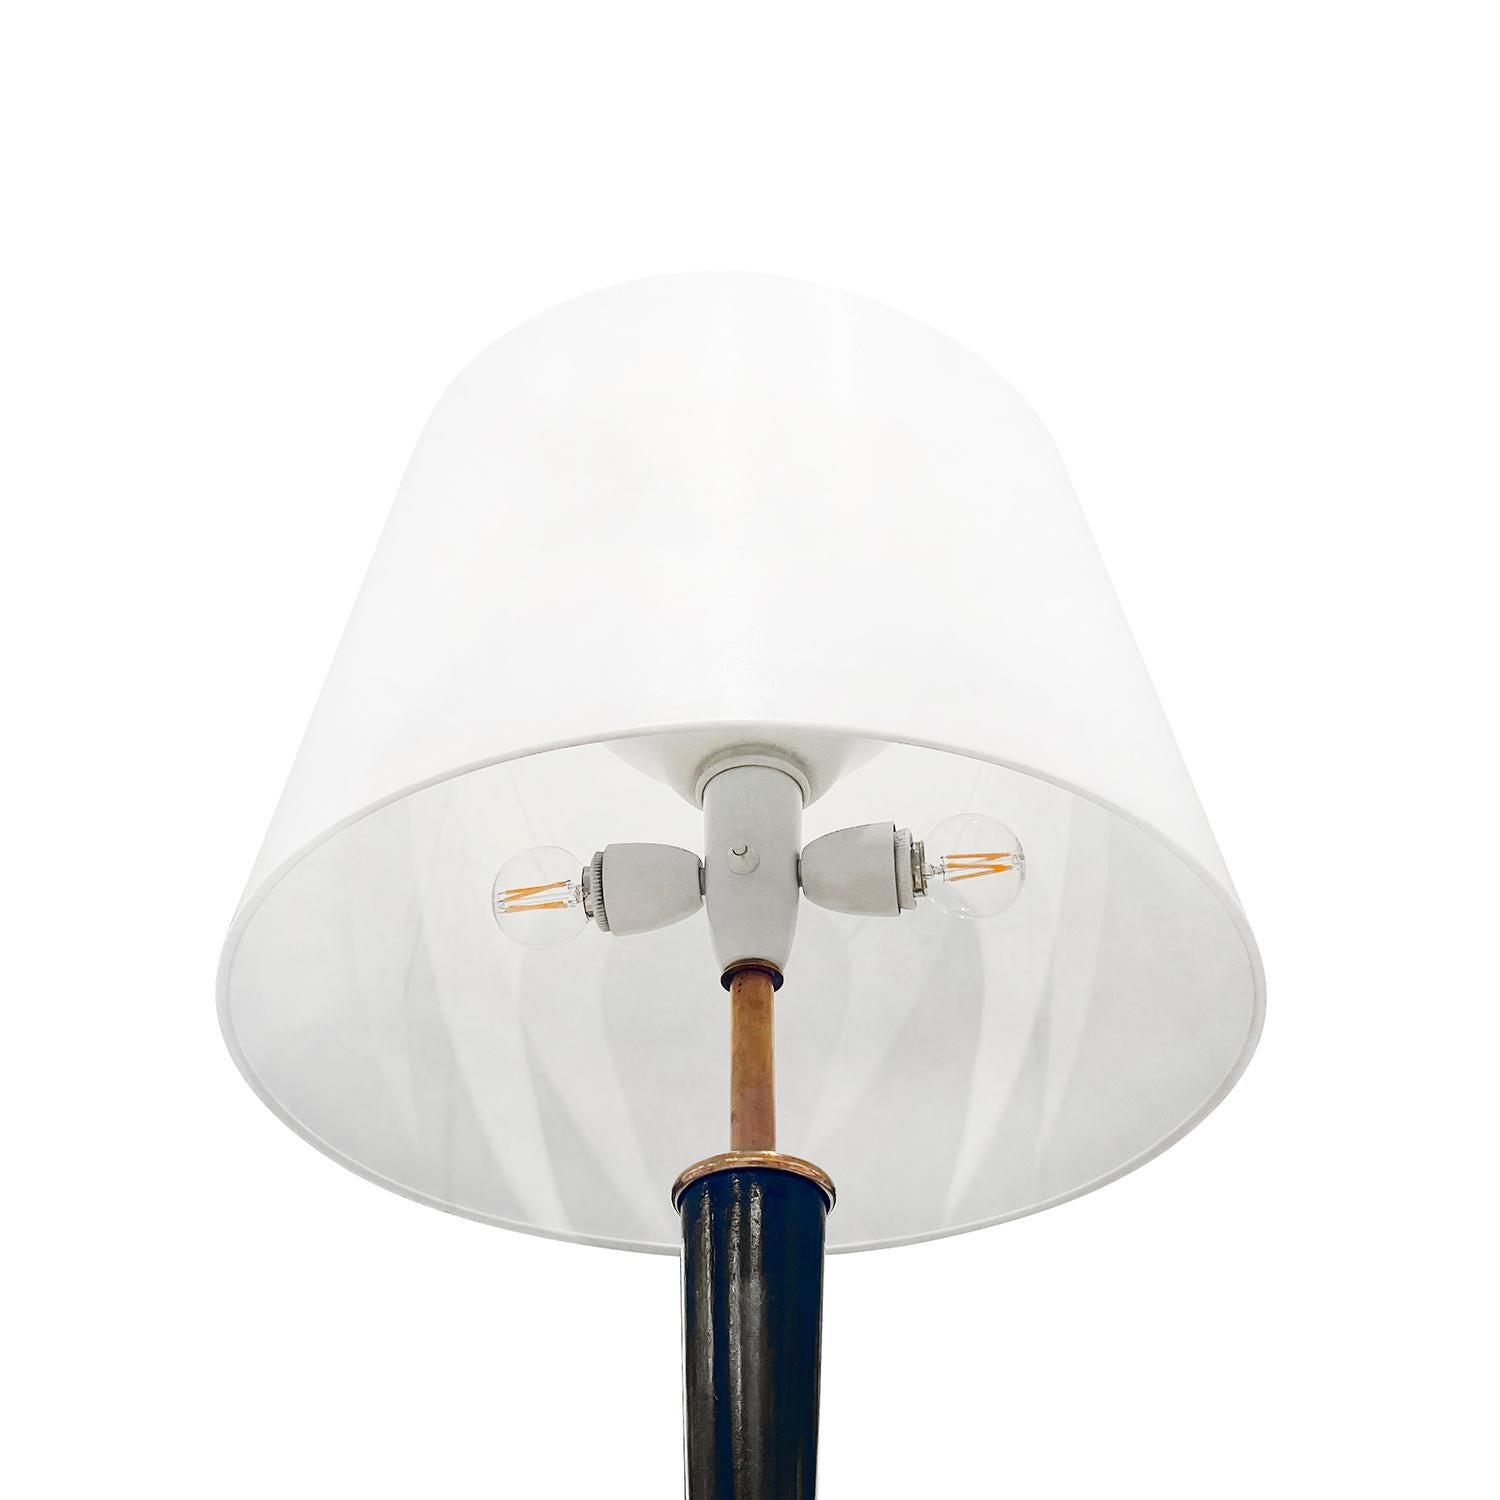 20th Century Italian Mid-Century Modern Iron Floor Lamp - Vintage Brass Light For Sale 2